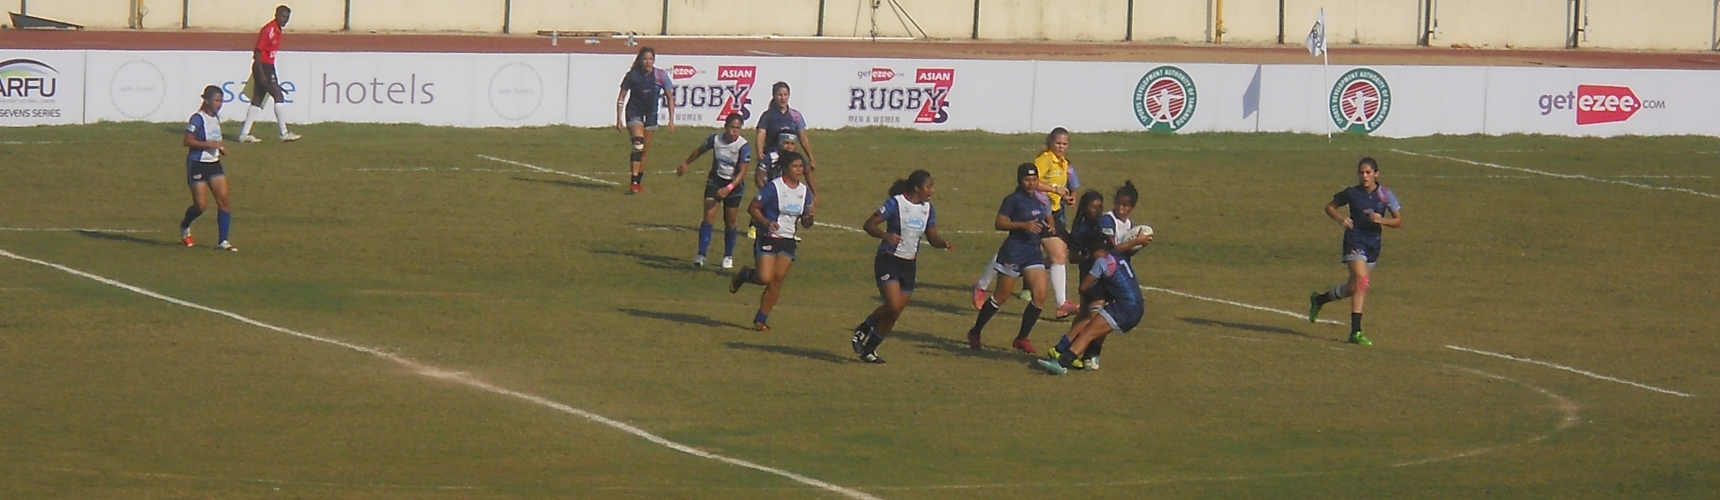 Chennai Rugby 2015